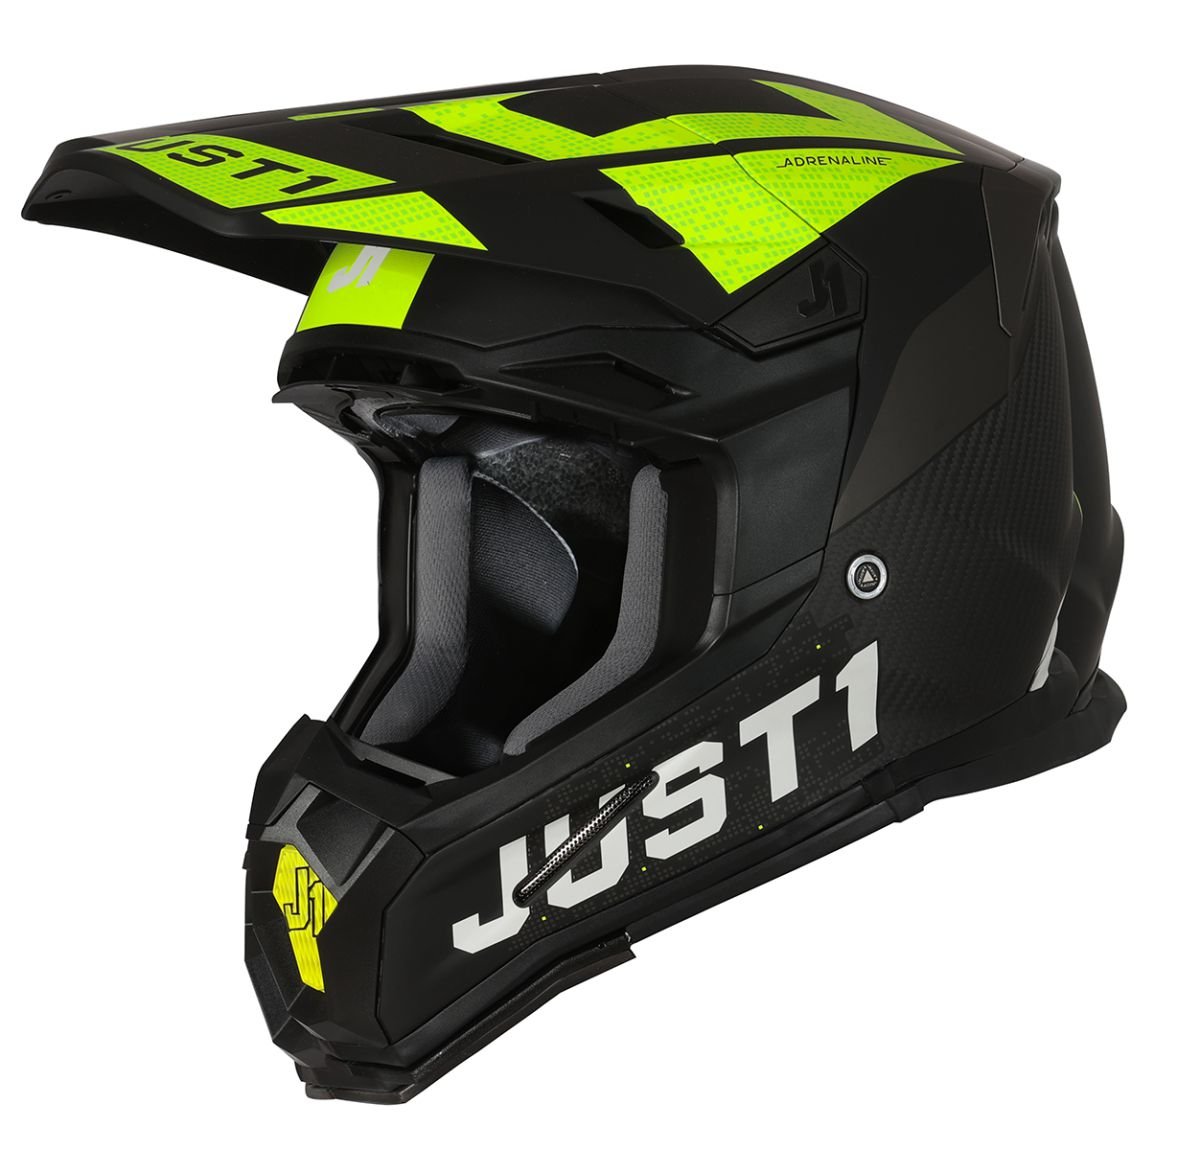 Image of Just1 Helmet J-22 Adrenaline Black Yellow Fluo Carbon Matt Offroad Helmet Talla S